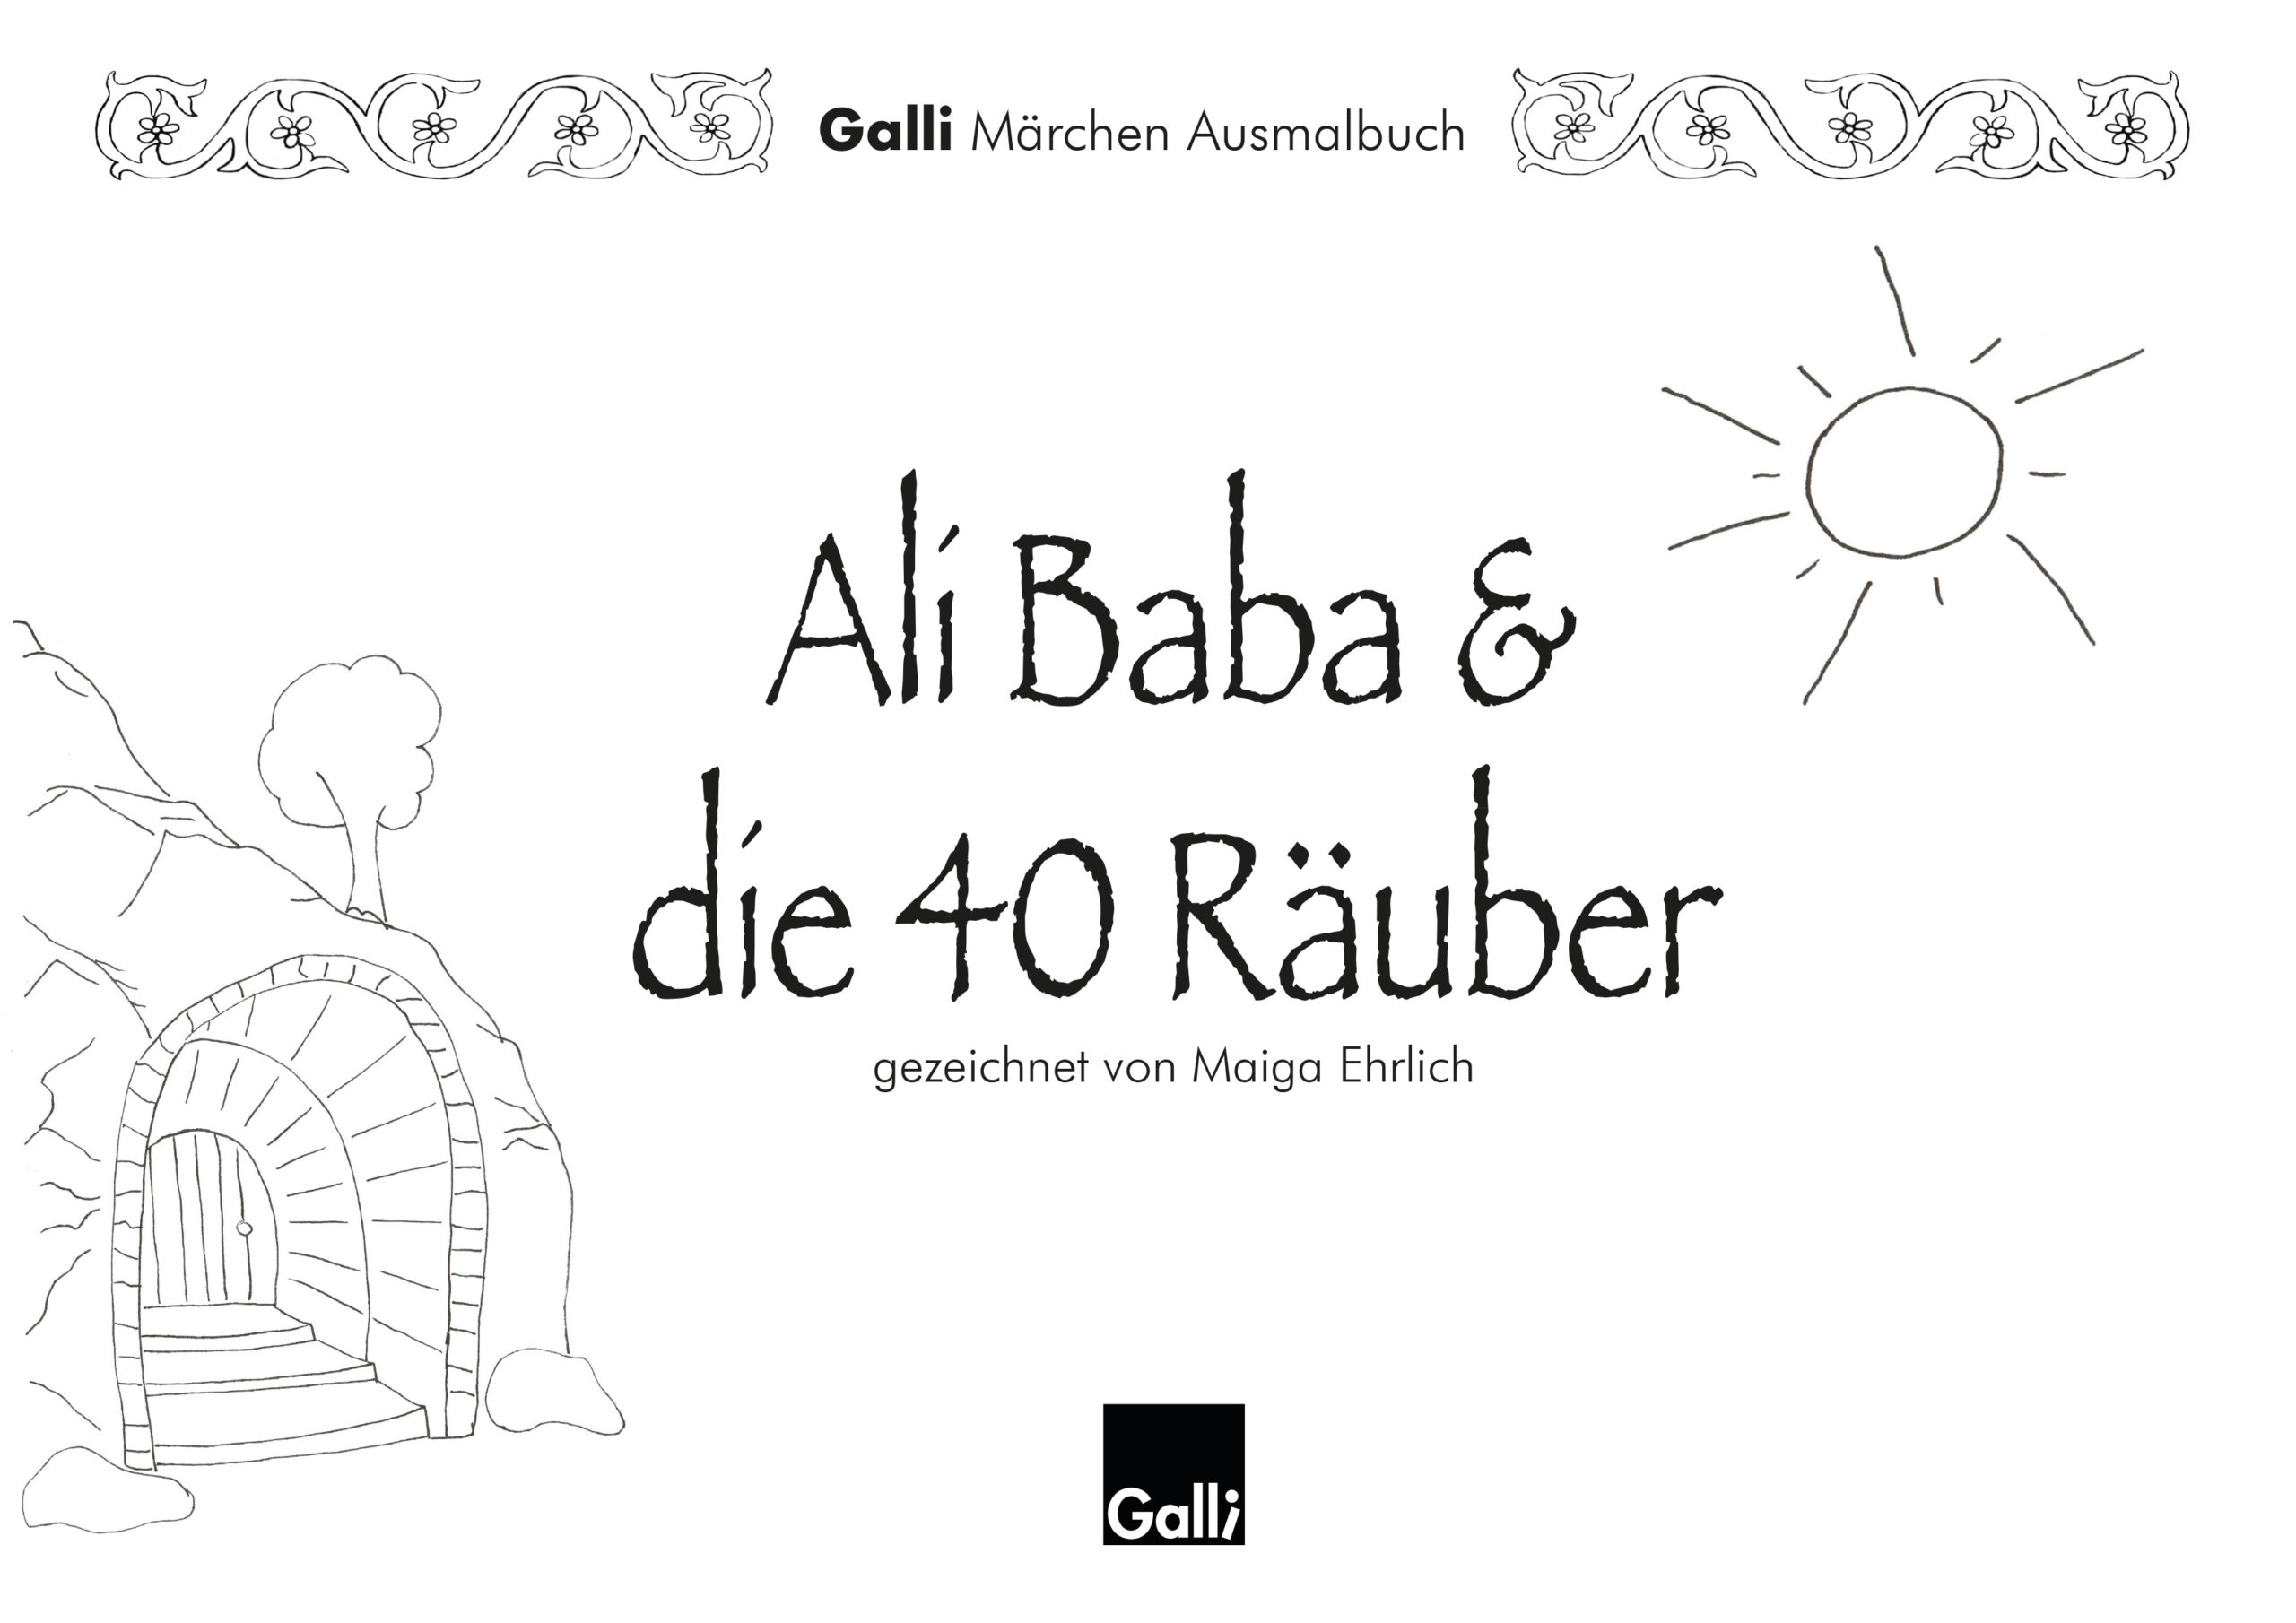 Märchen Ausmalbuch – Ali Baba & die 40 Räuber